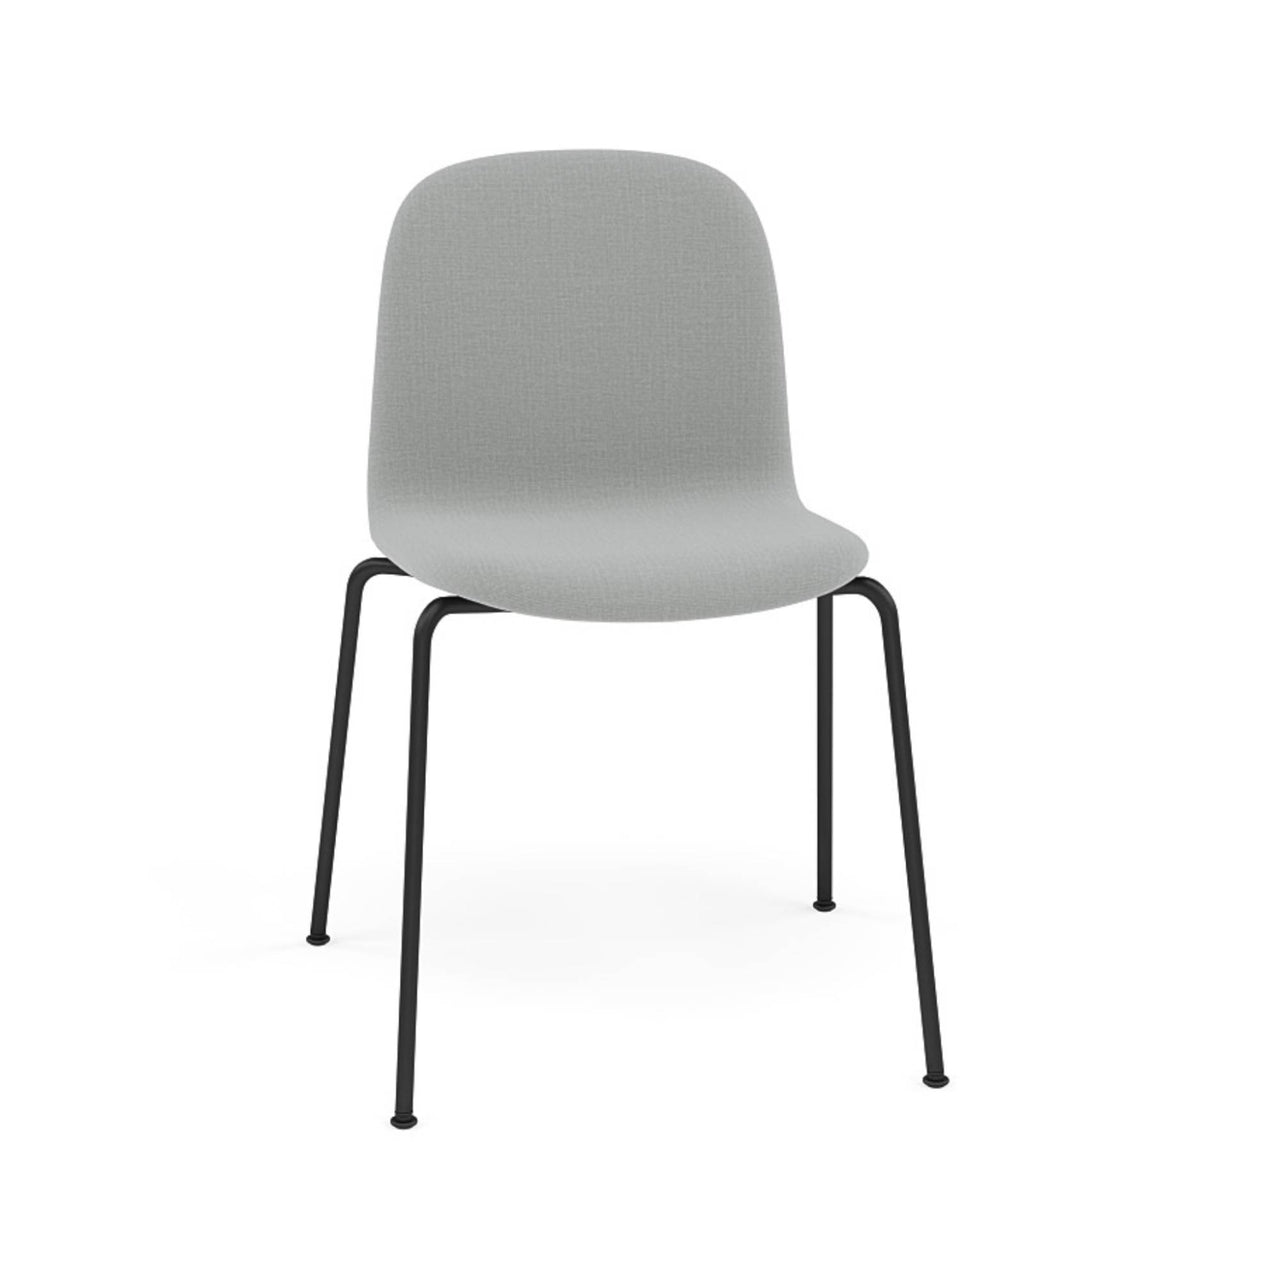 Visu Chair: Tube Base + Upholstered + Black